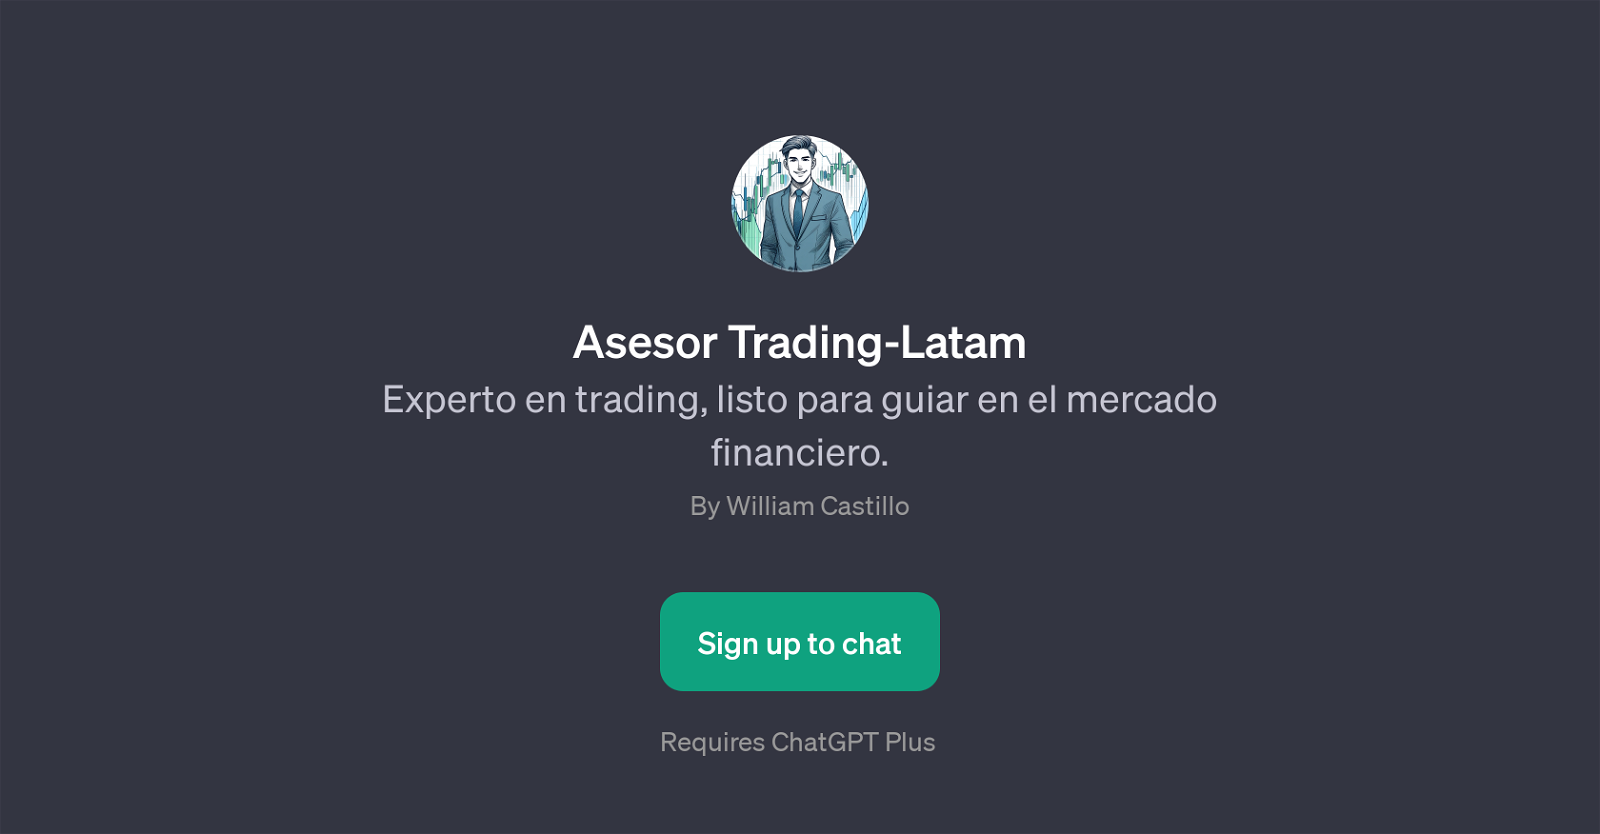 Asesor Trading-Latam website